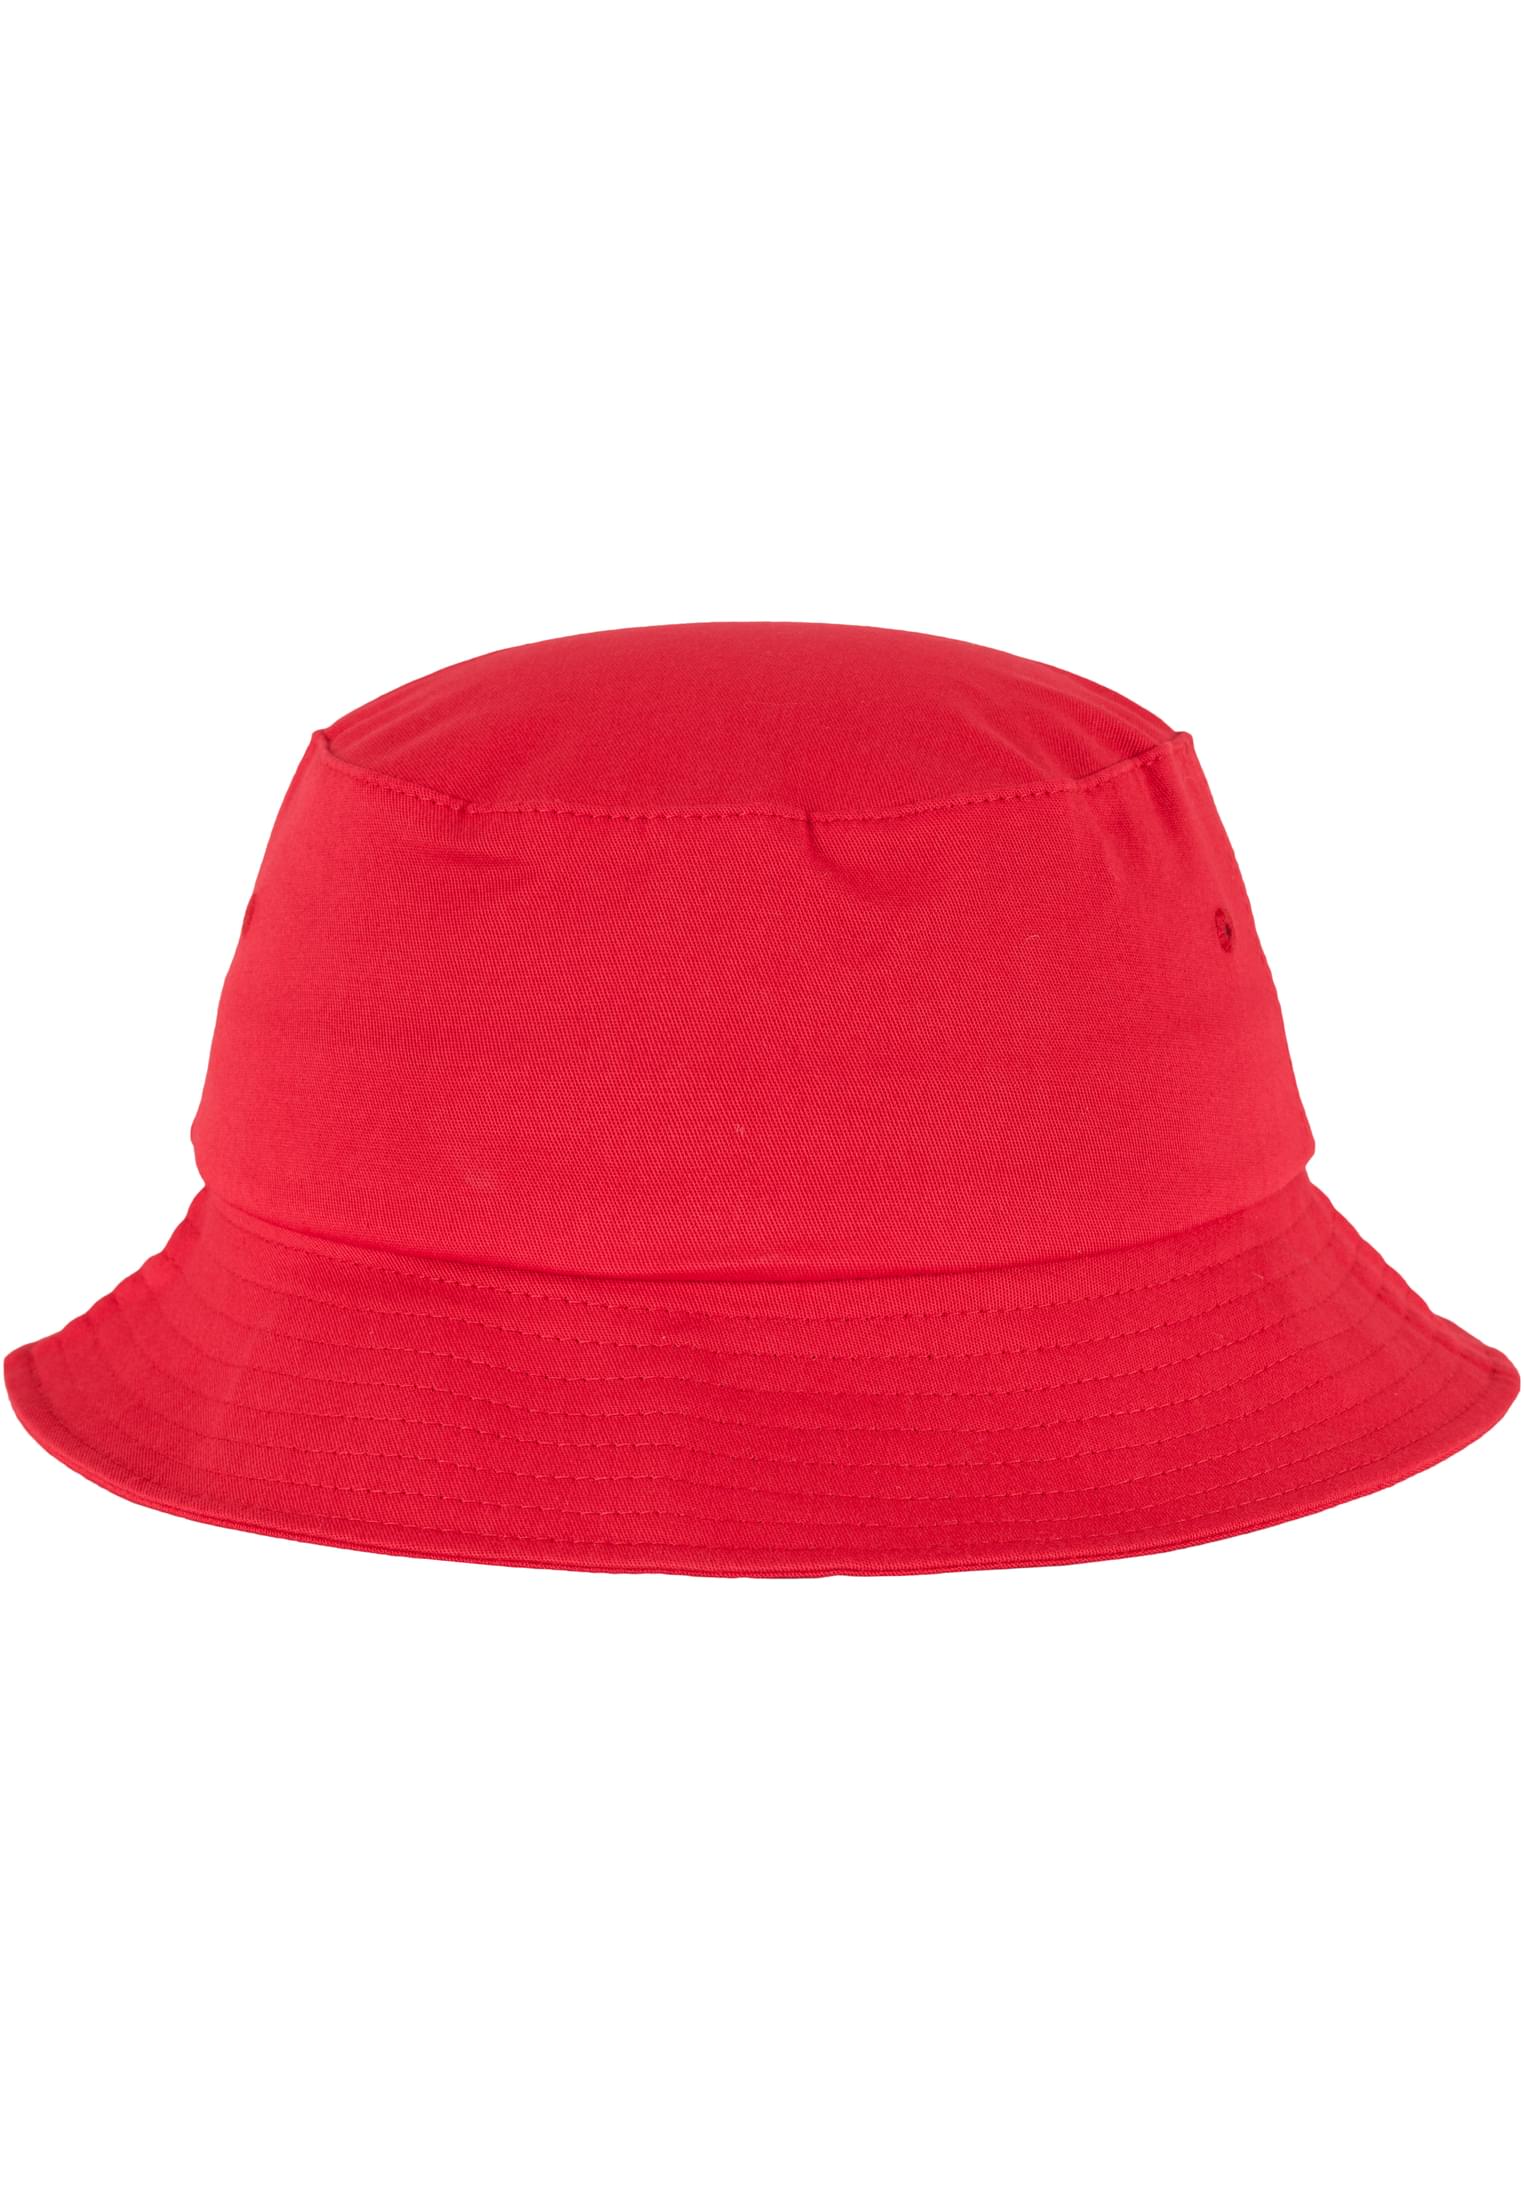 Hat-5003 Flexfit Bucket Twill Cotton